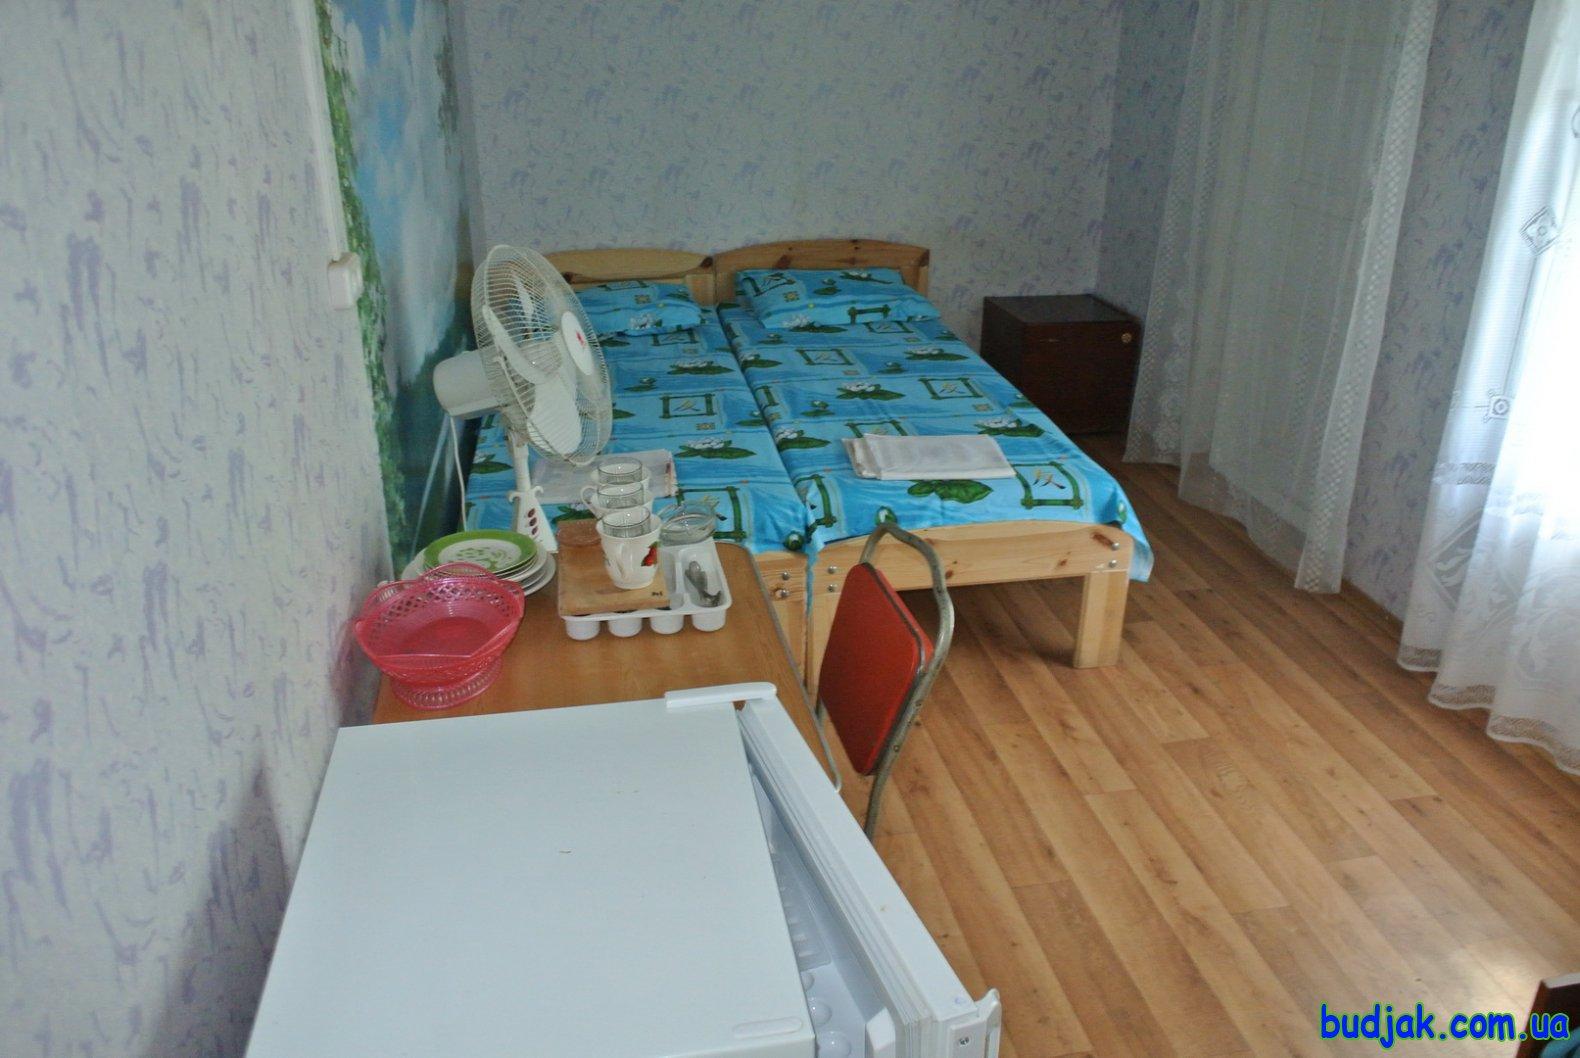 Частный коттедж отдыха «Дубовая роща» на курорте Лебедевка. Фото № 10971